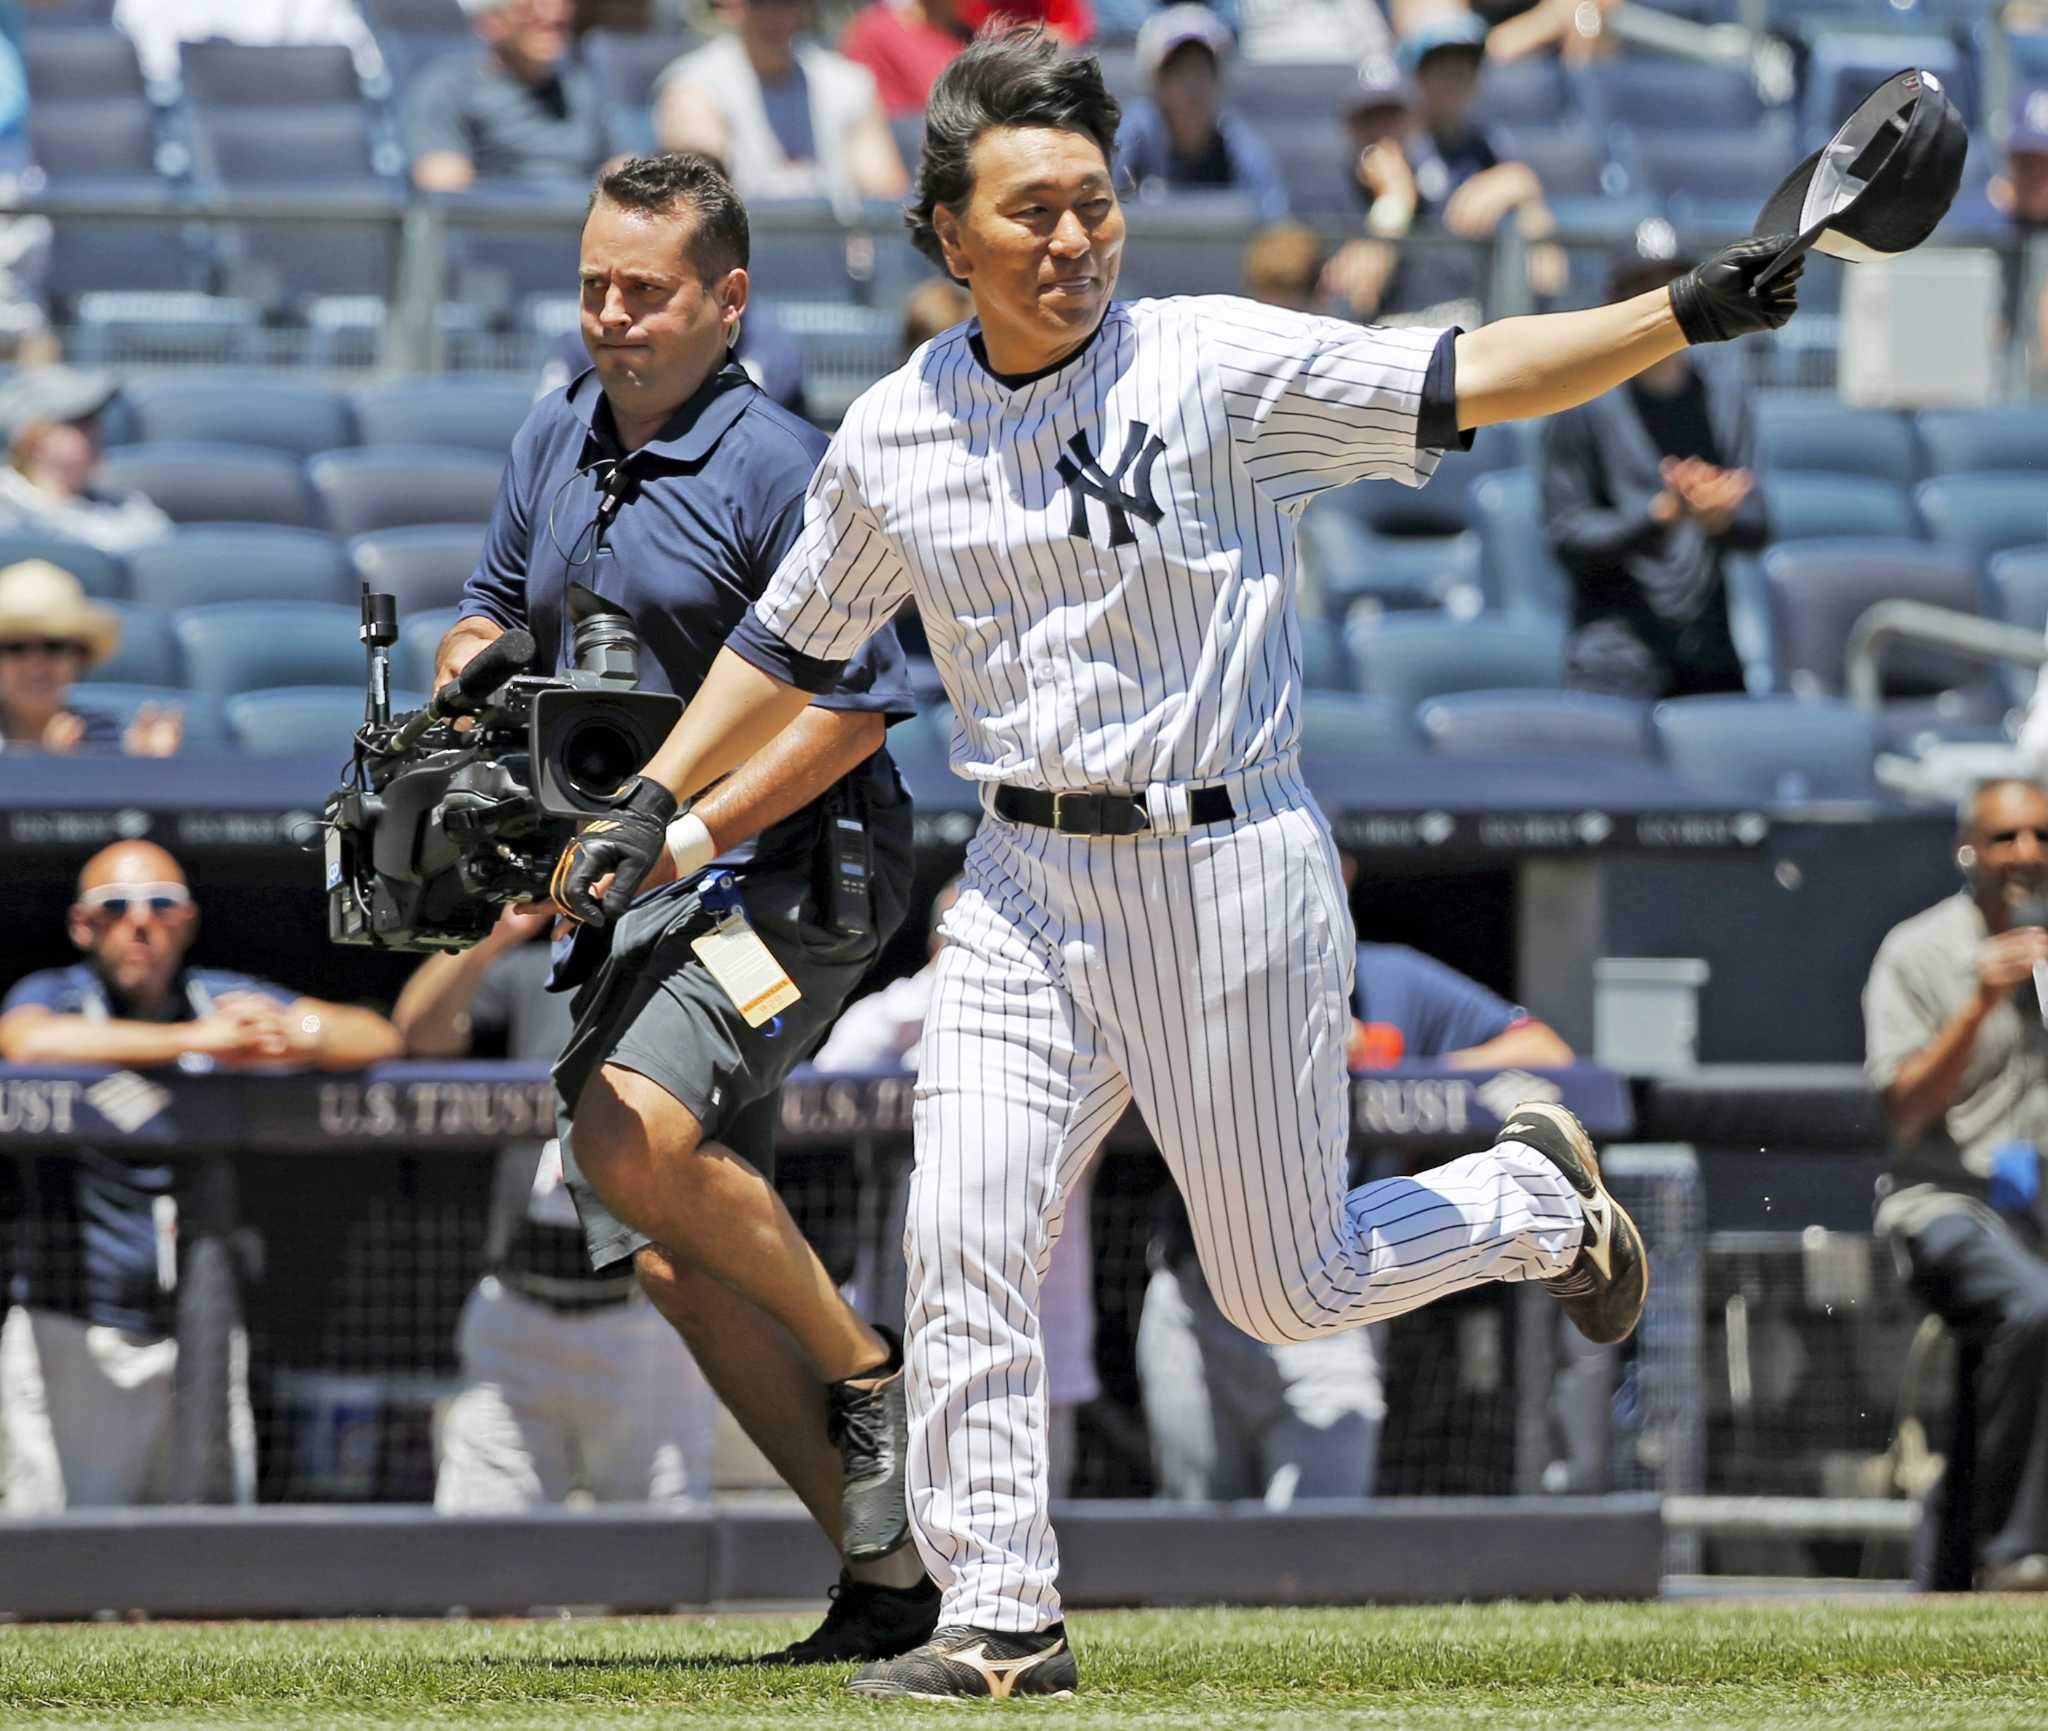  2006 Topps # 346 Hideki Matsui New York Yankees